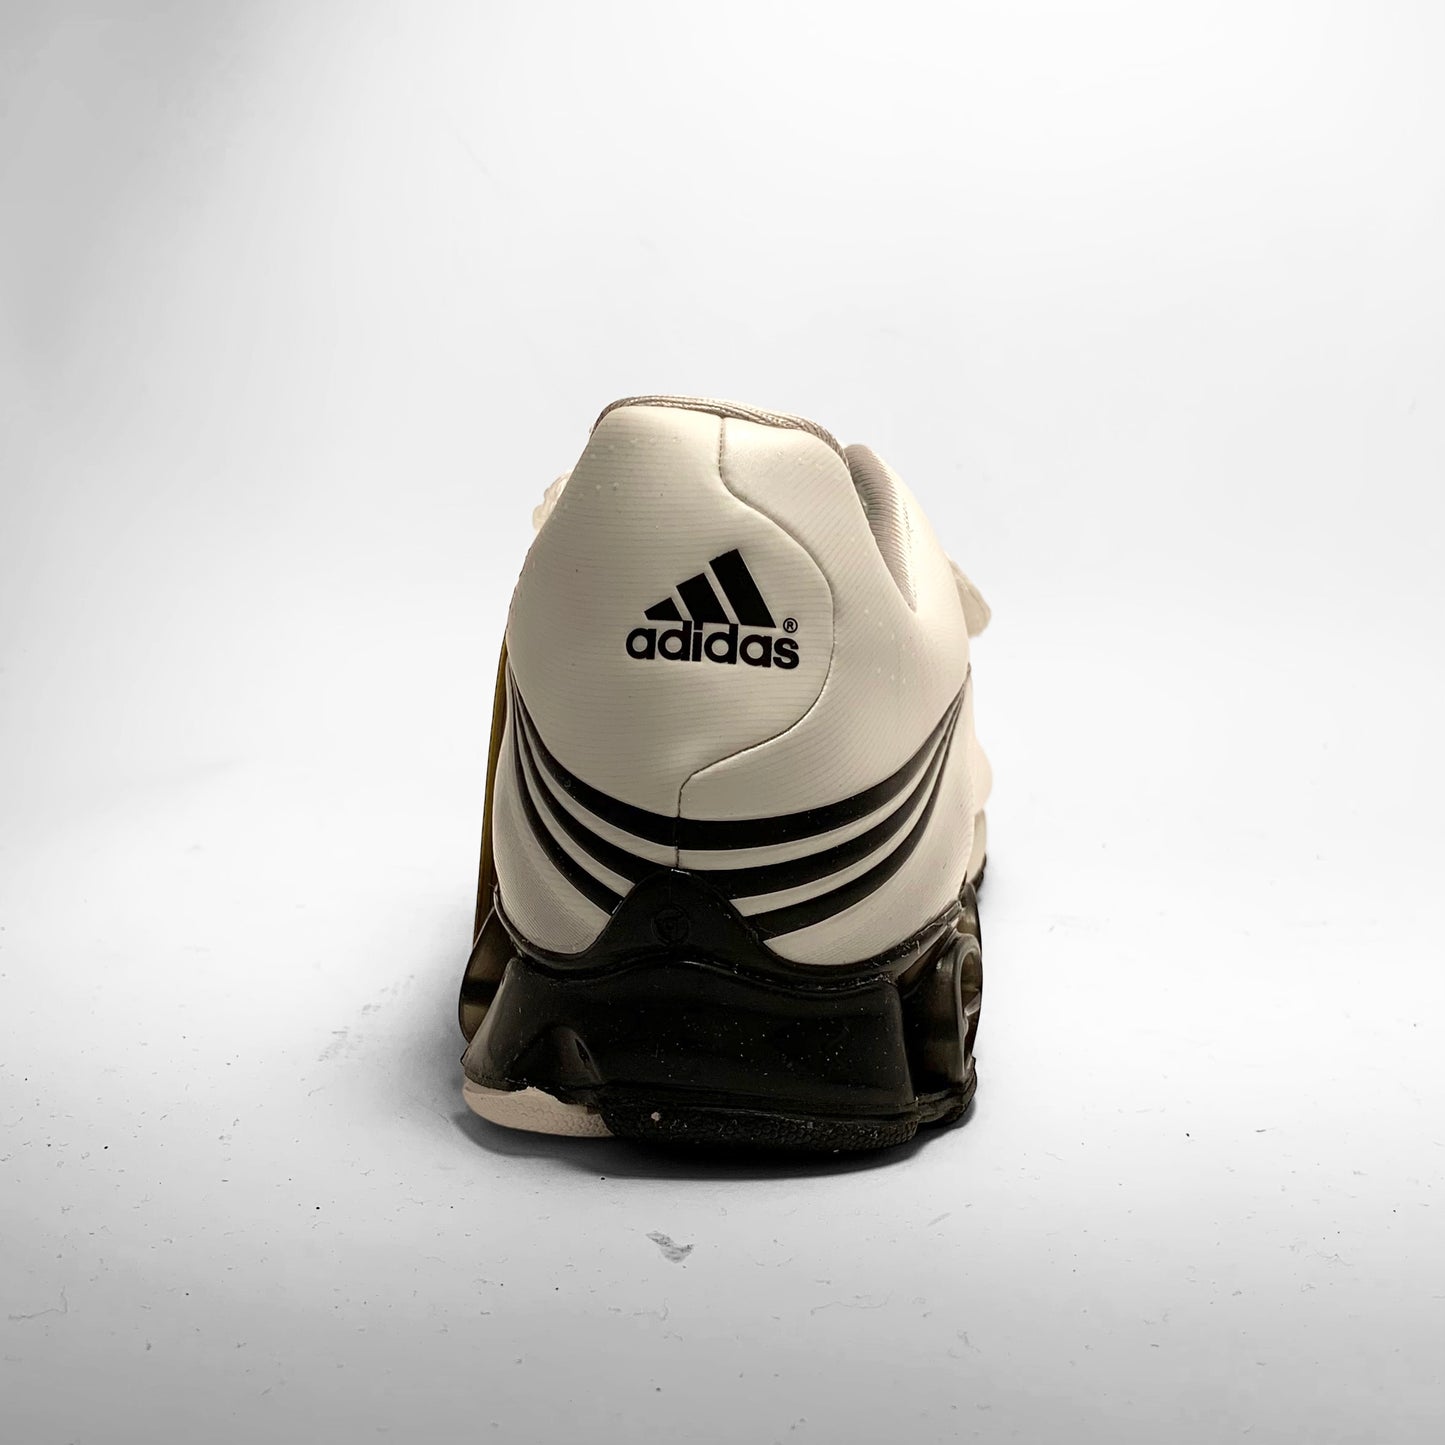 Adidas F50 ‘Sample’ (2006)